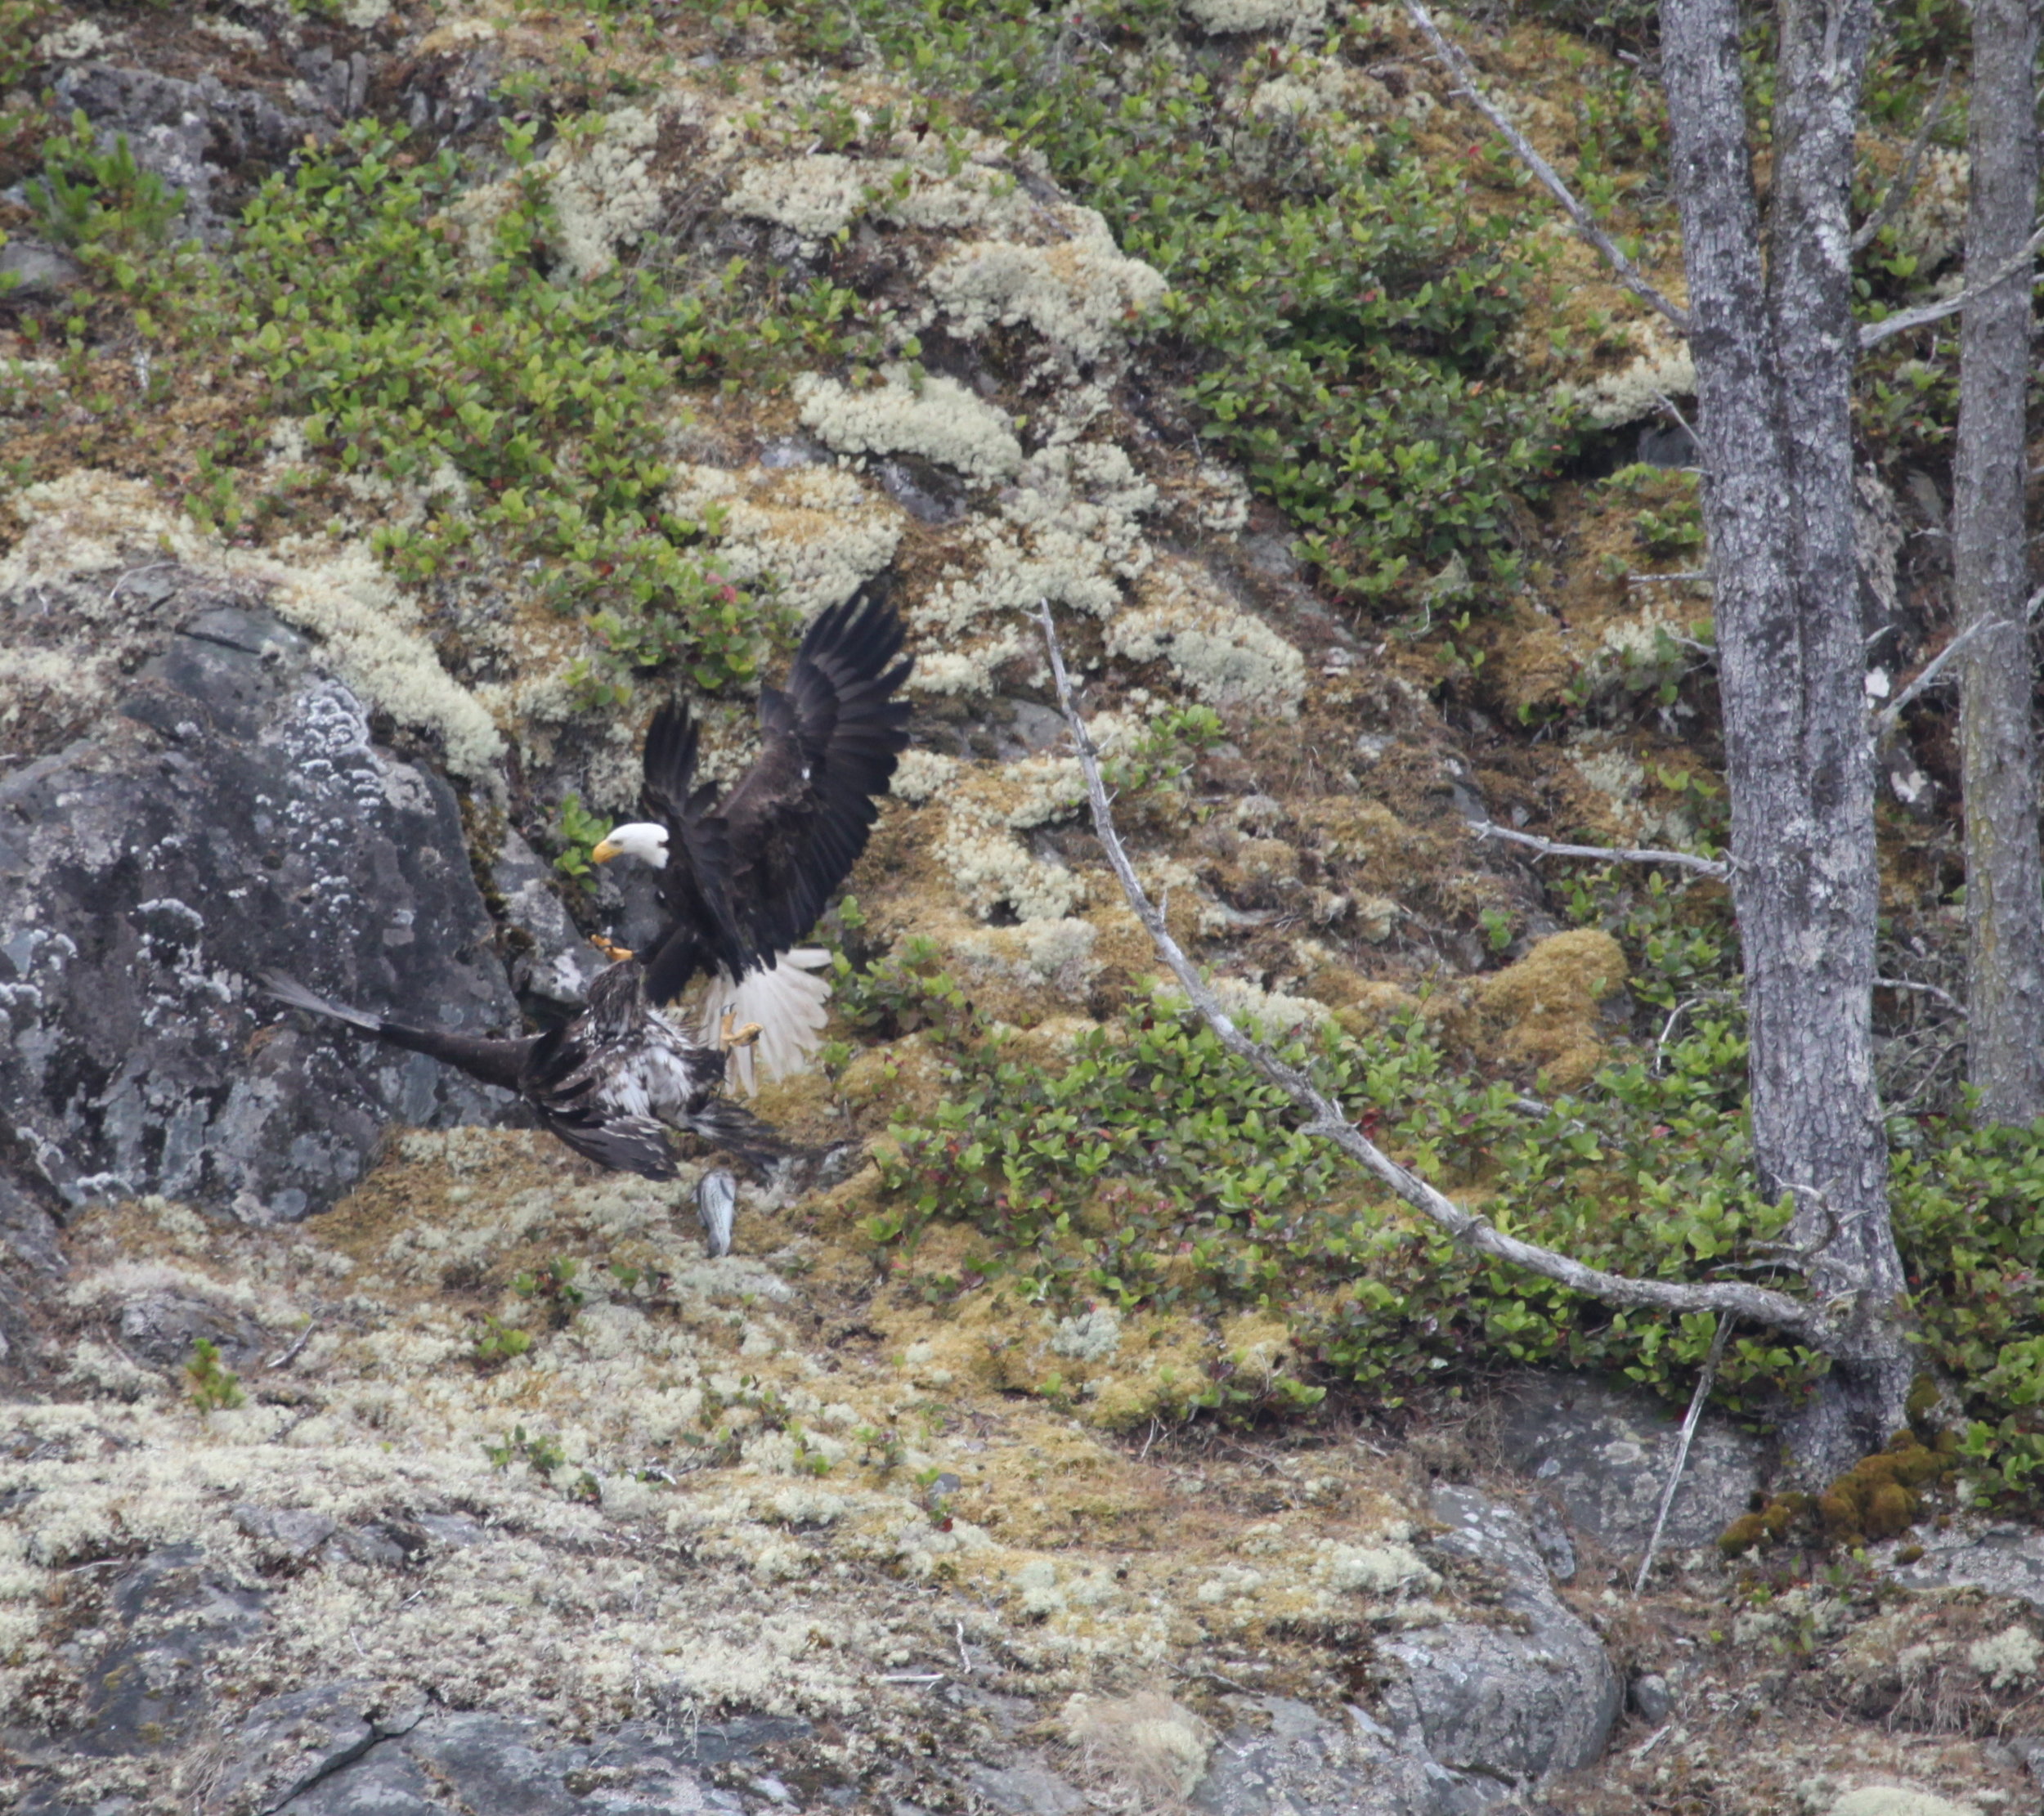 Juvenile eagle grabbing salmon from mature eagle